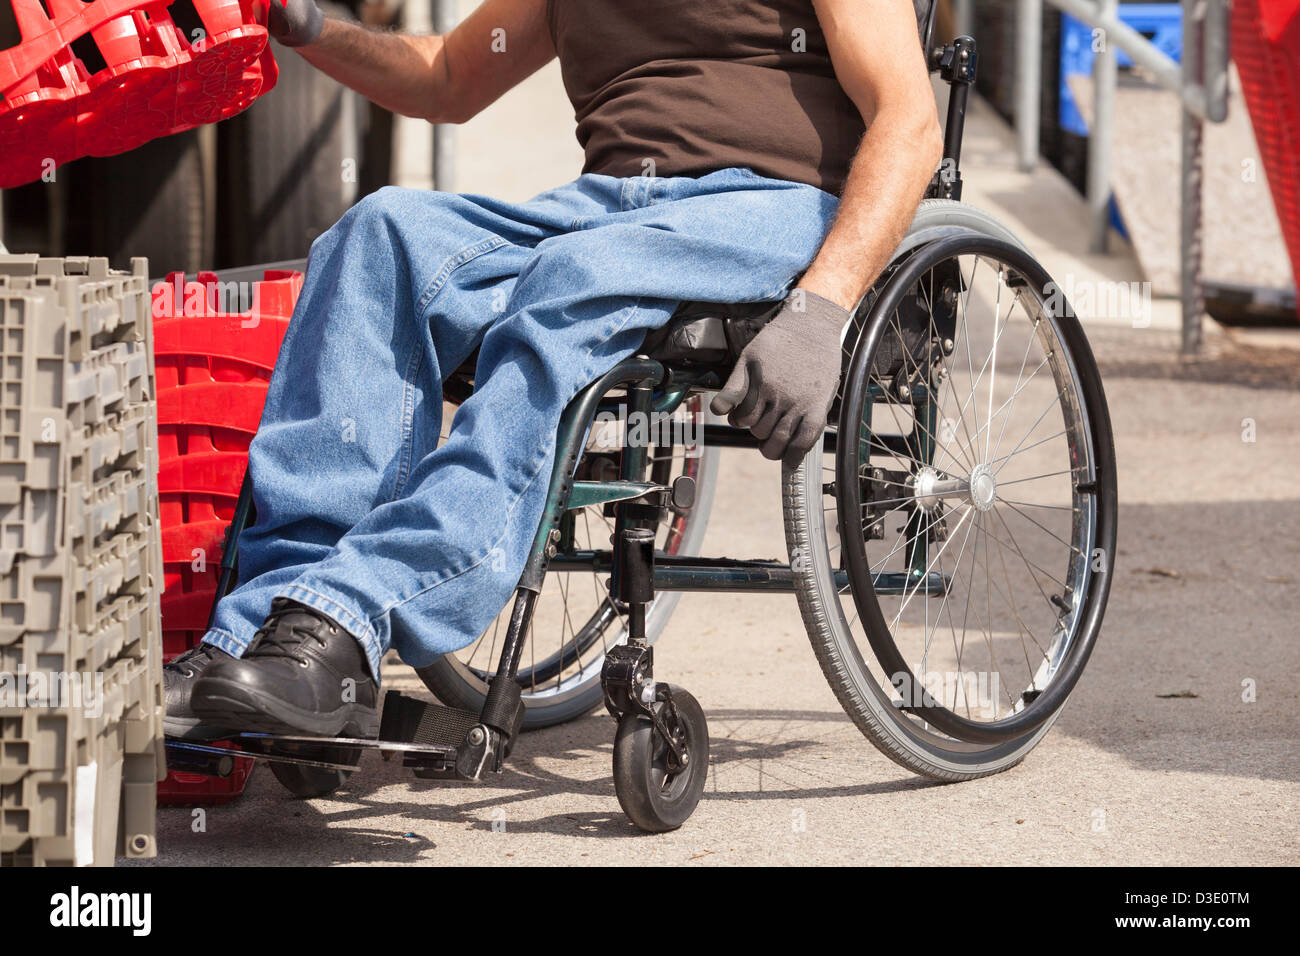 Laden Hafenarbeiter mit Querschnittslähmung im Rollstuhl Stapeln Inventar  Tabletts Stockfotografie - Alamy